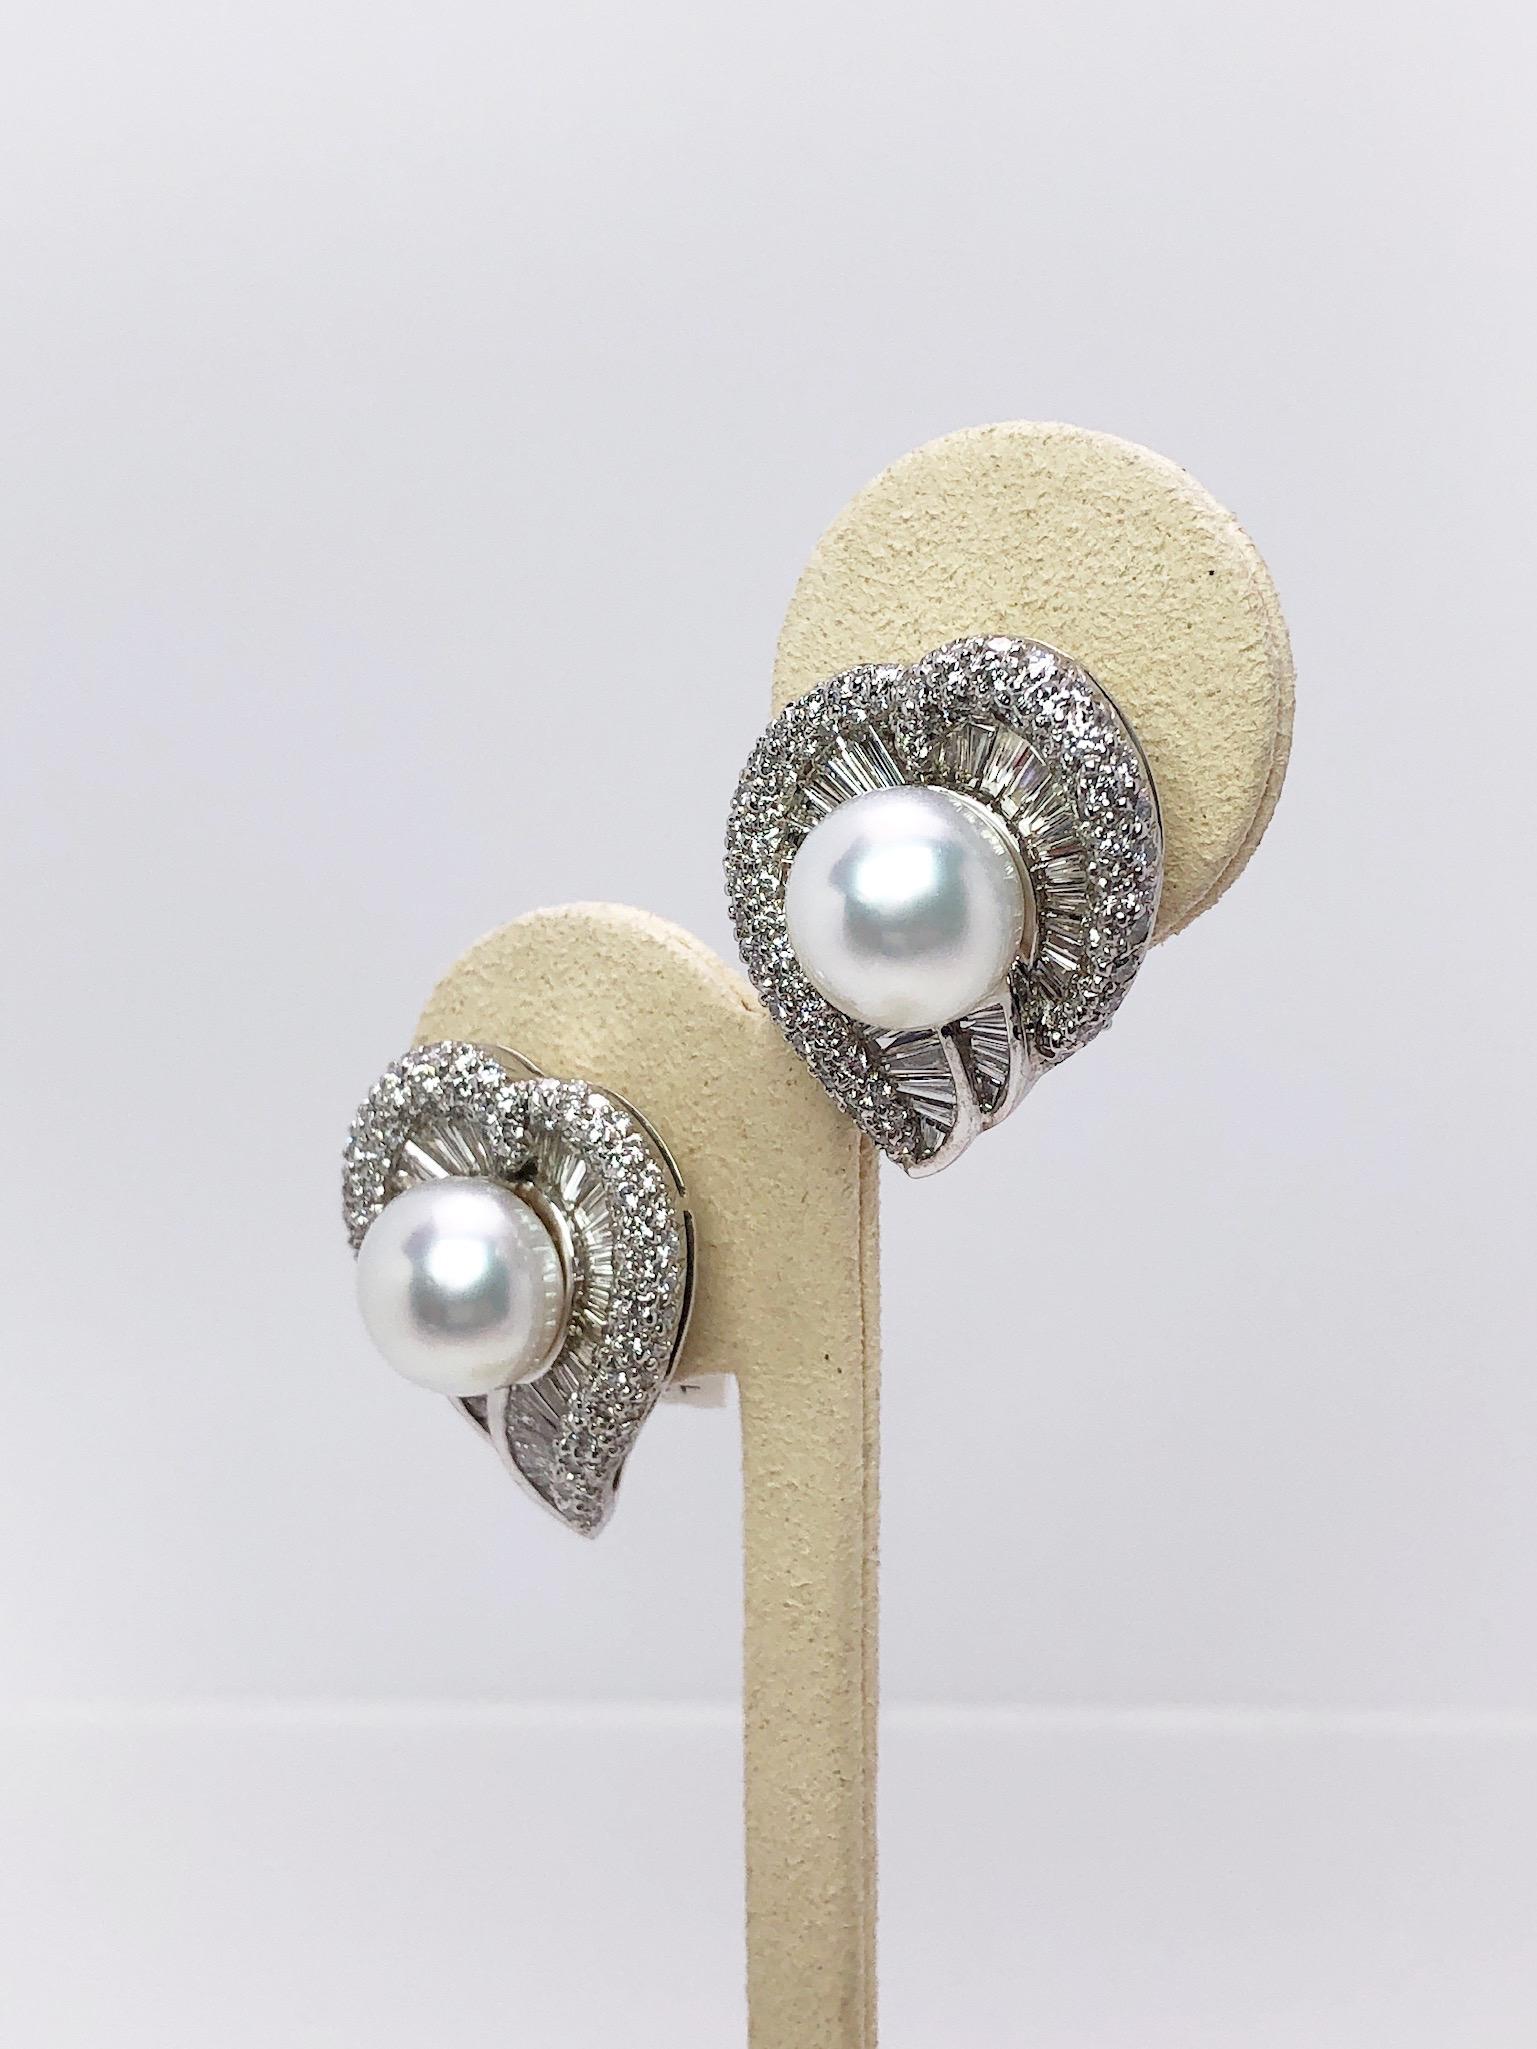 Boucles d'oreilles exclusives Cellini.
Ces boucles d'oreilles sont conçues comme une gracieuse forme de feuille. Elles sont serties de diamants coniques de taille baguette et de diamants ronds brillants. Les boucles d'oreilles sont ornées de perles